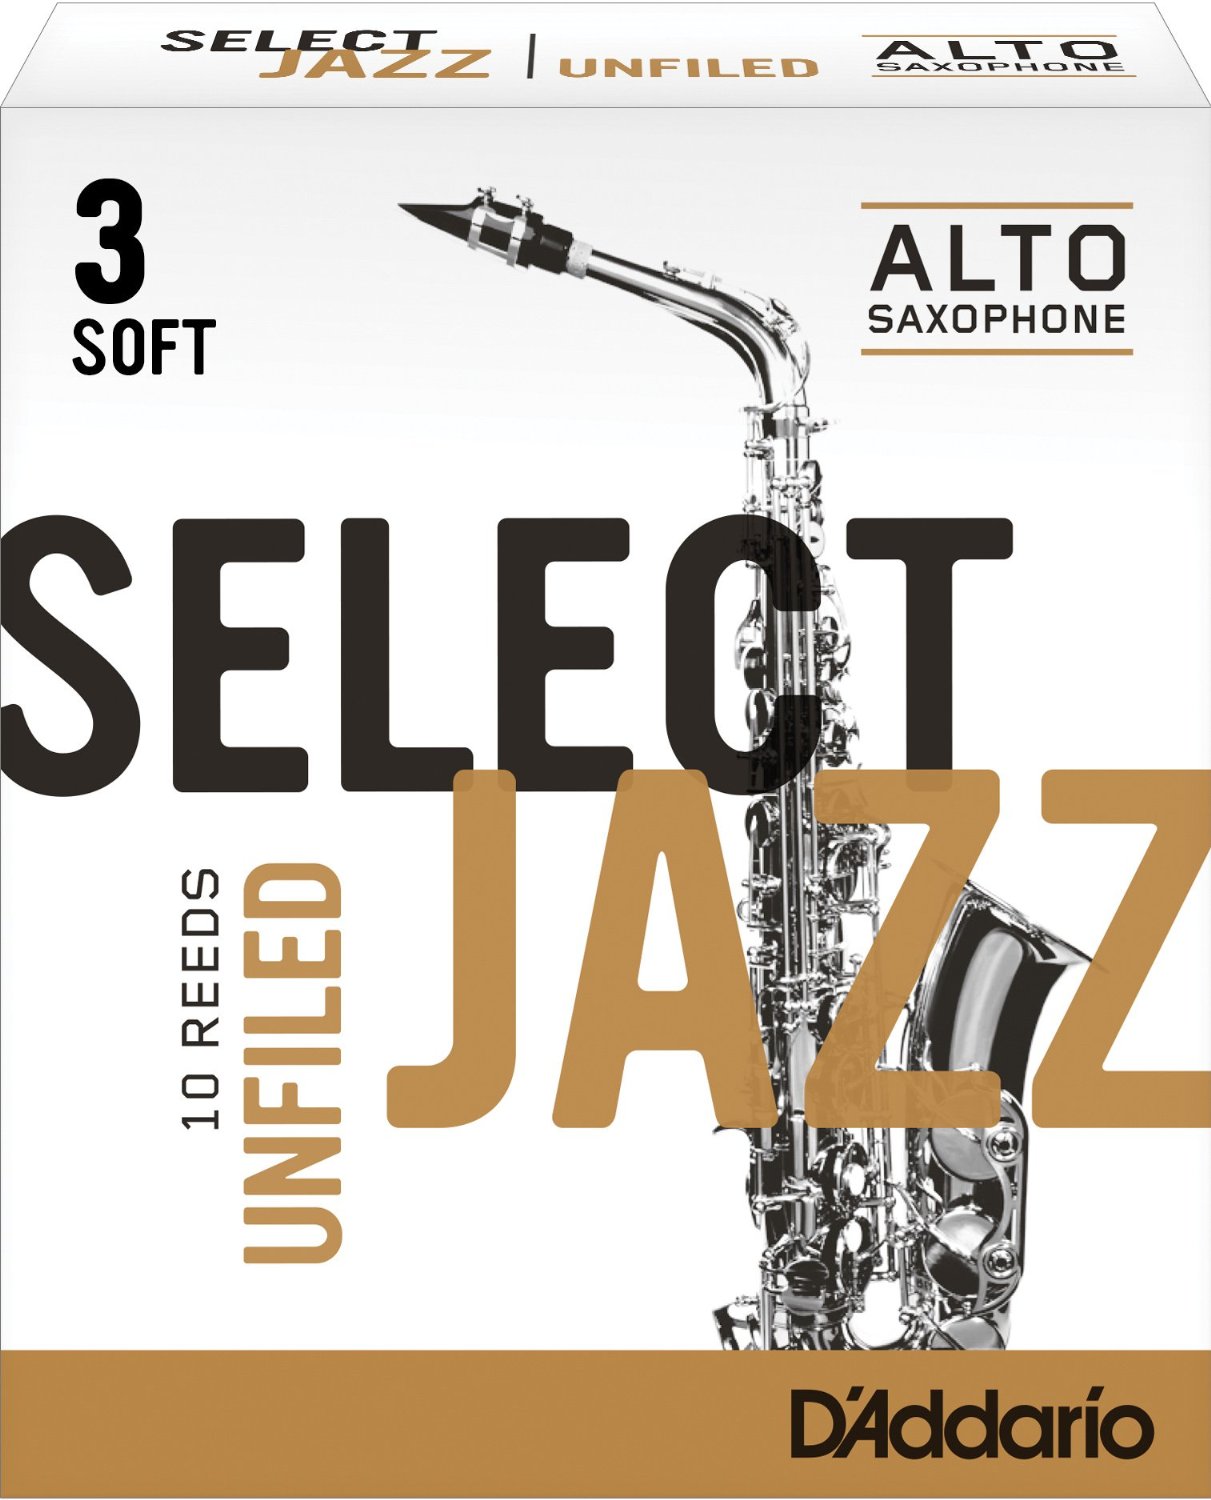 D'Addario Select Jazz Unfiled Eb Alto Saz Reeds 10ct 3 Soft Strength